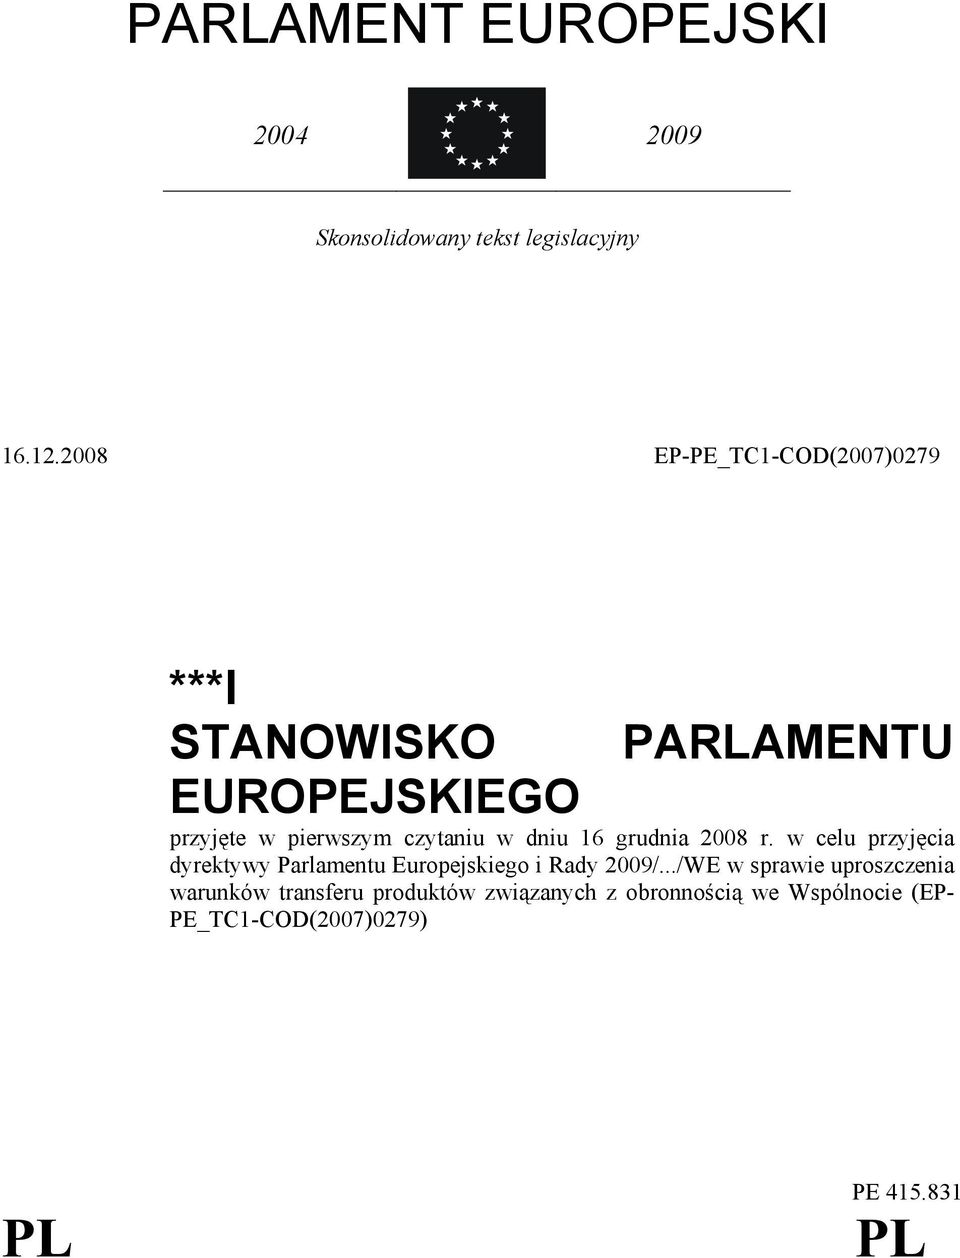 w dniu 16 grudnia 2008 r. w celu przyjęcia dyrektywy Parlamentu Europejskiego i Rady 2009/.